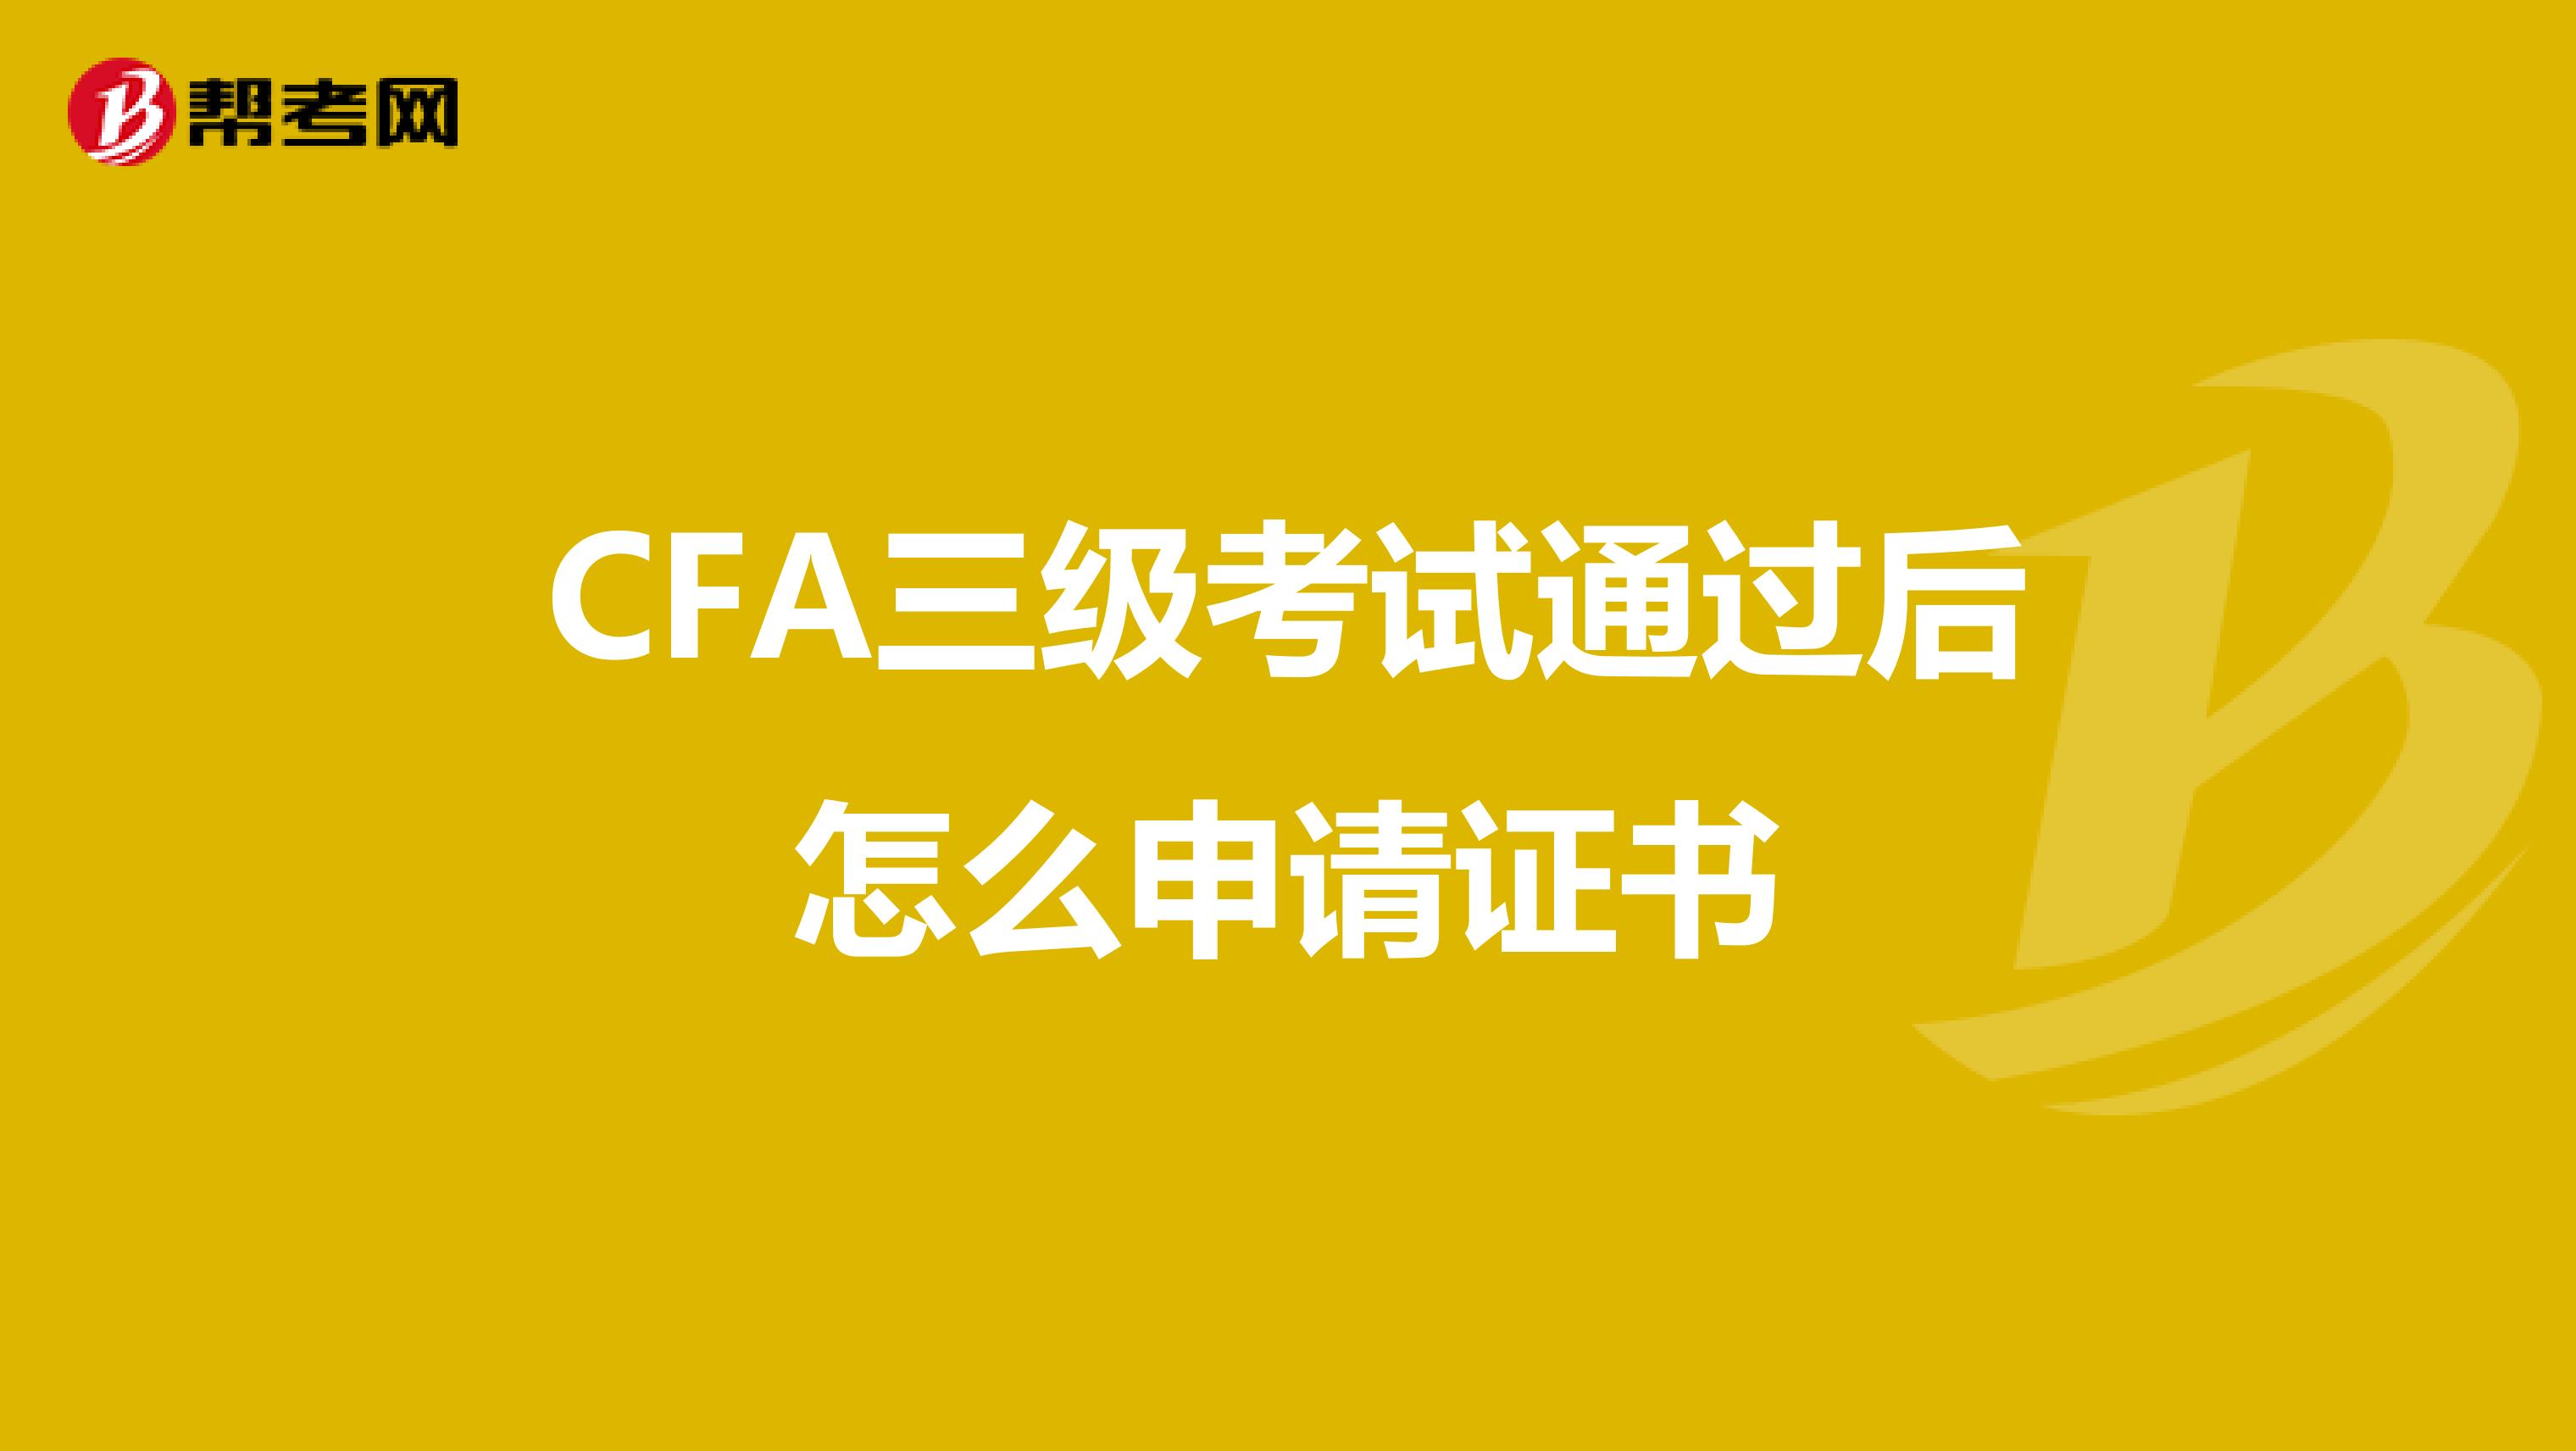 CFA三级考试通过后怎么申请证书